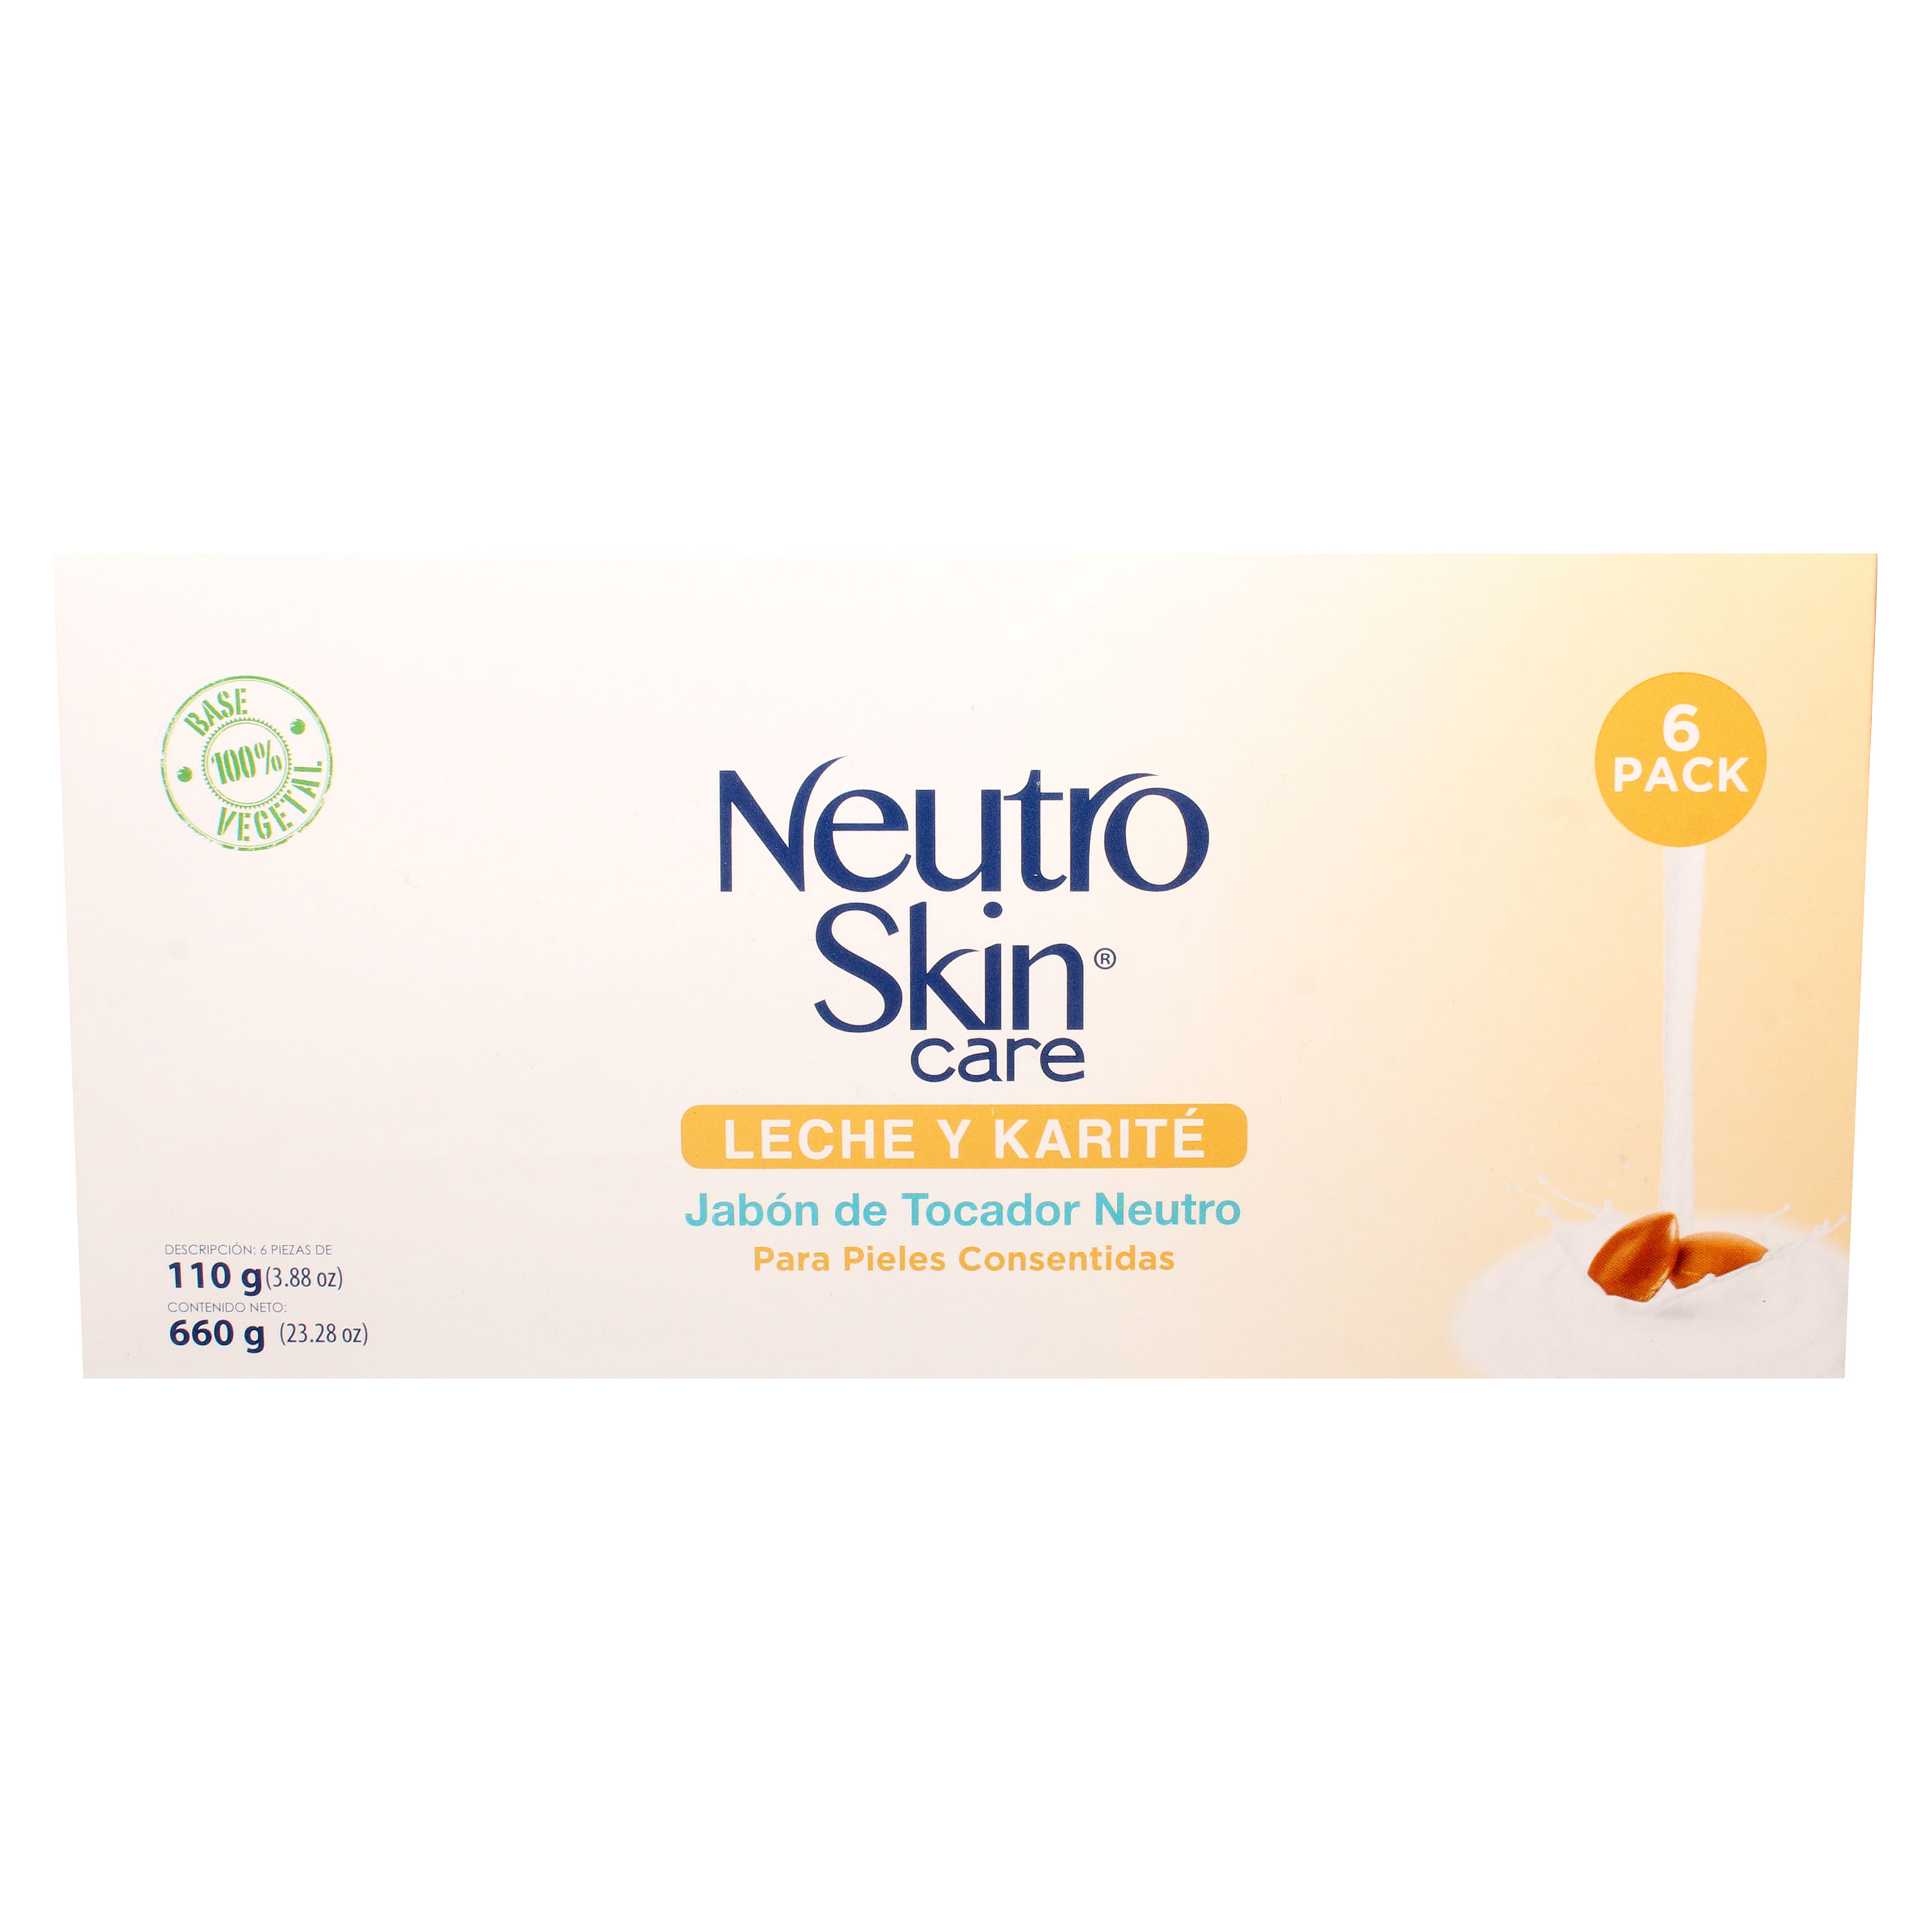 Jab-n-Neutro-Skin-Care-Leche-Y-Karit-6P-660gr-1-32343